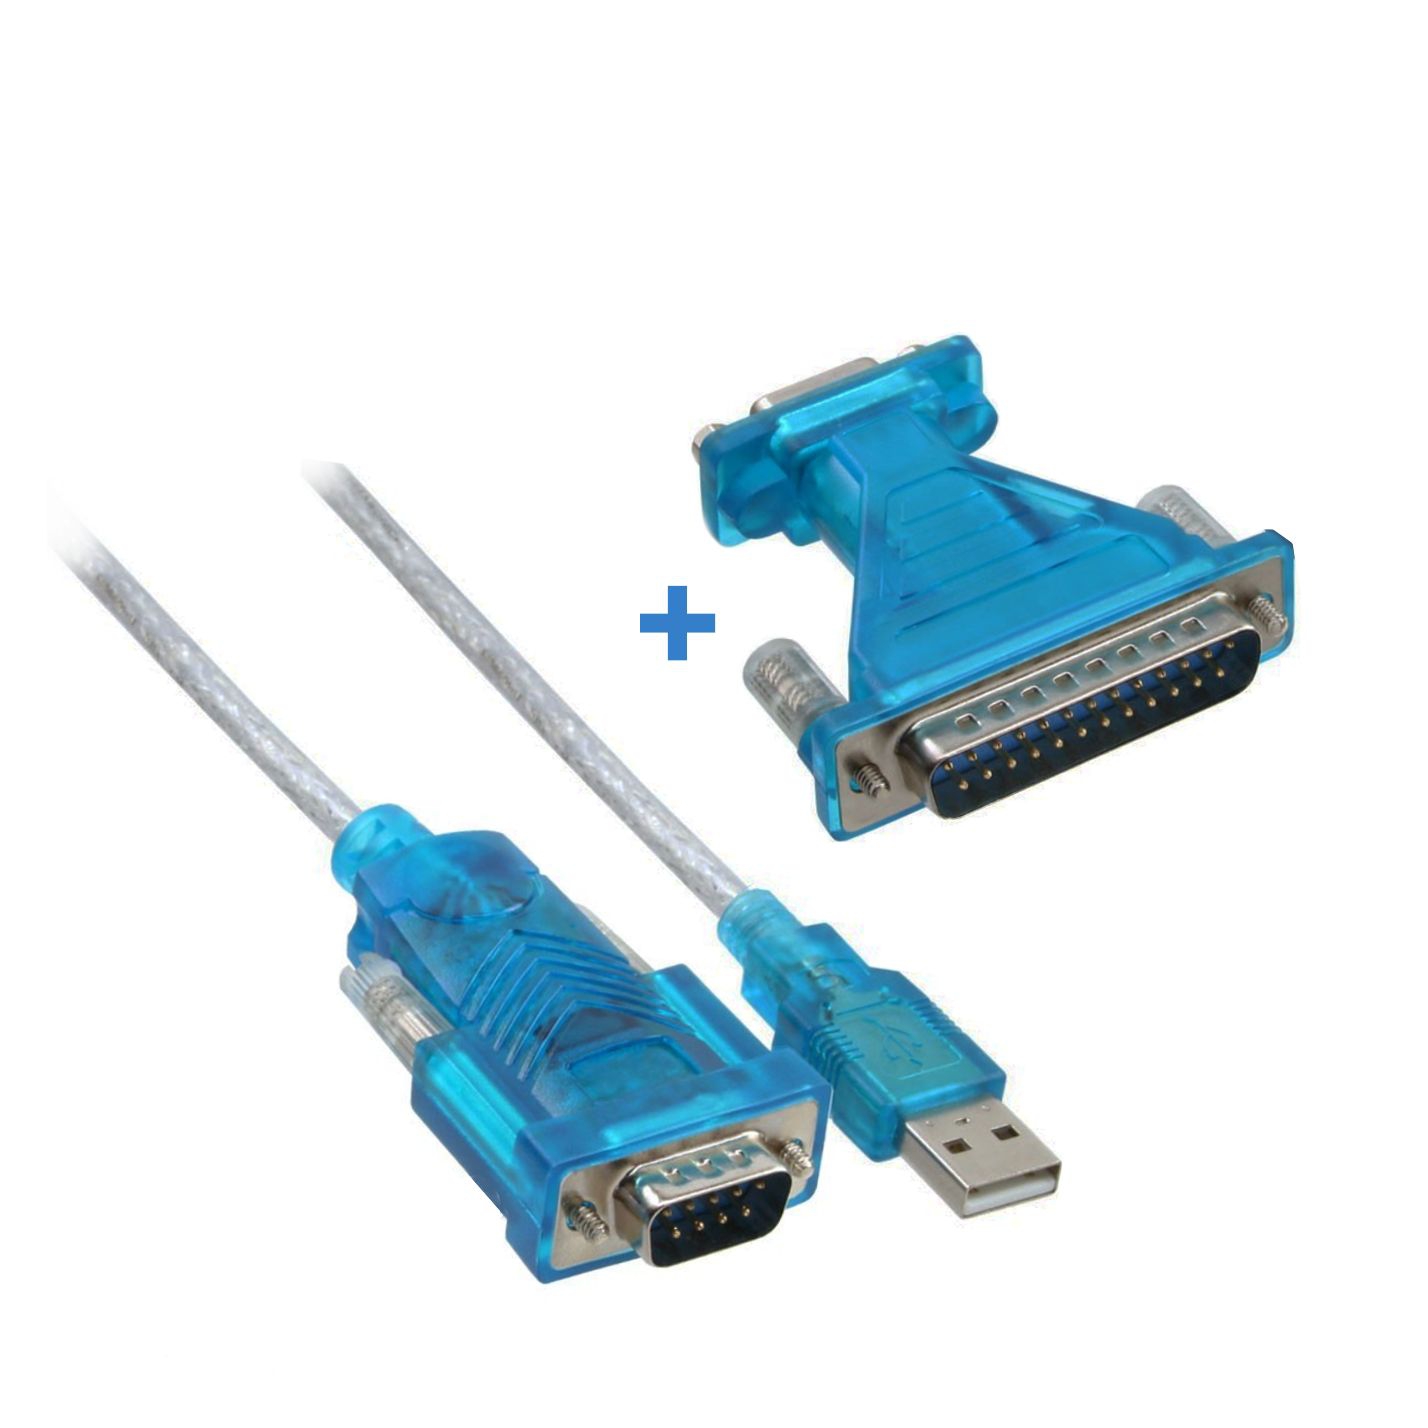 Convertisseur USB 2.0 vers série RS232 (DB9) avec chip de FTDI, cable 180cm